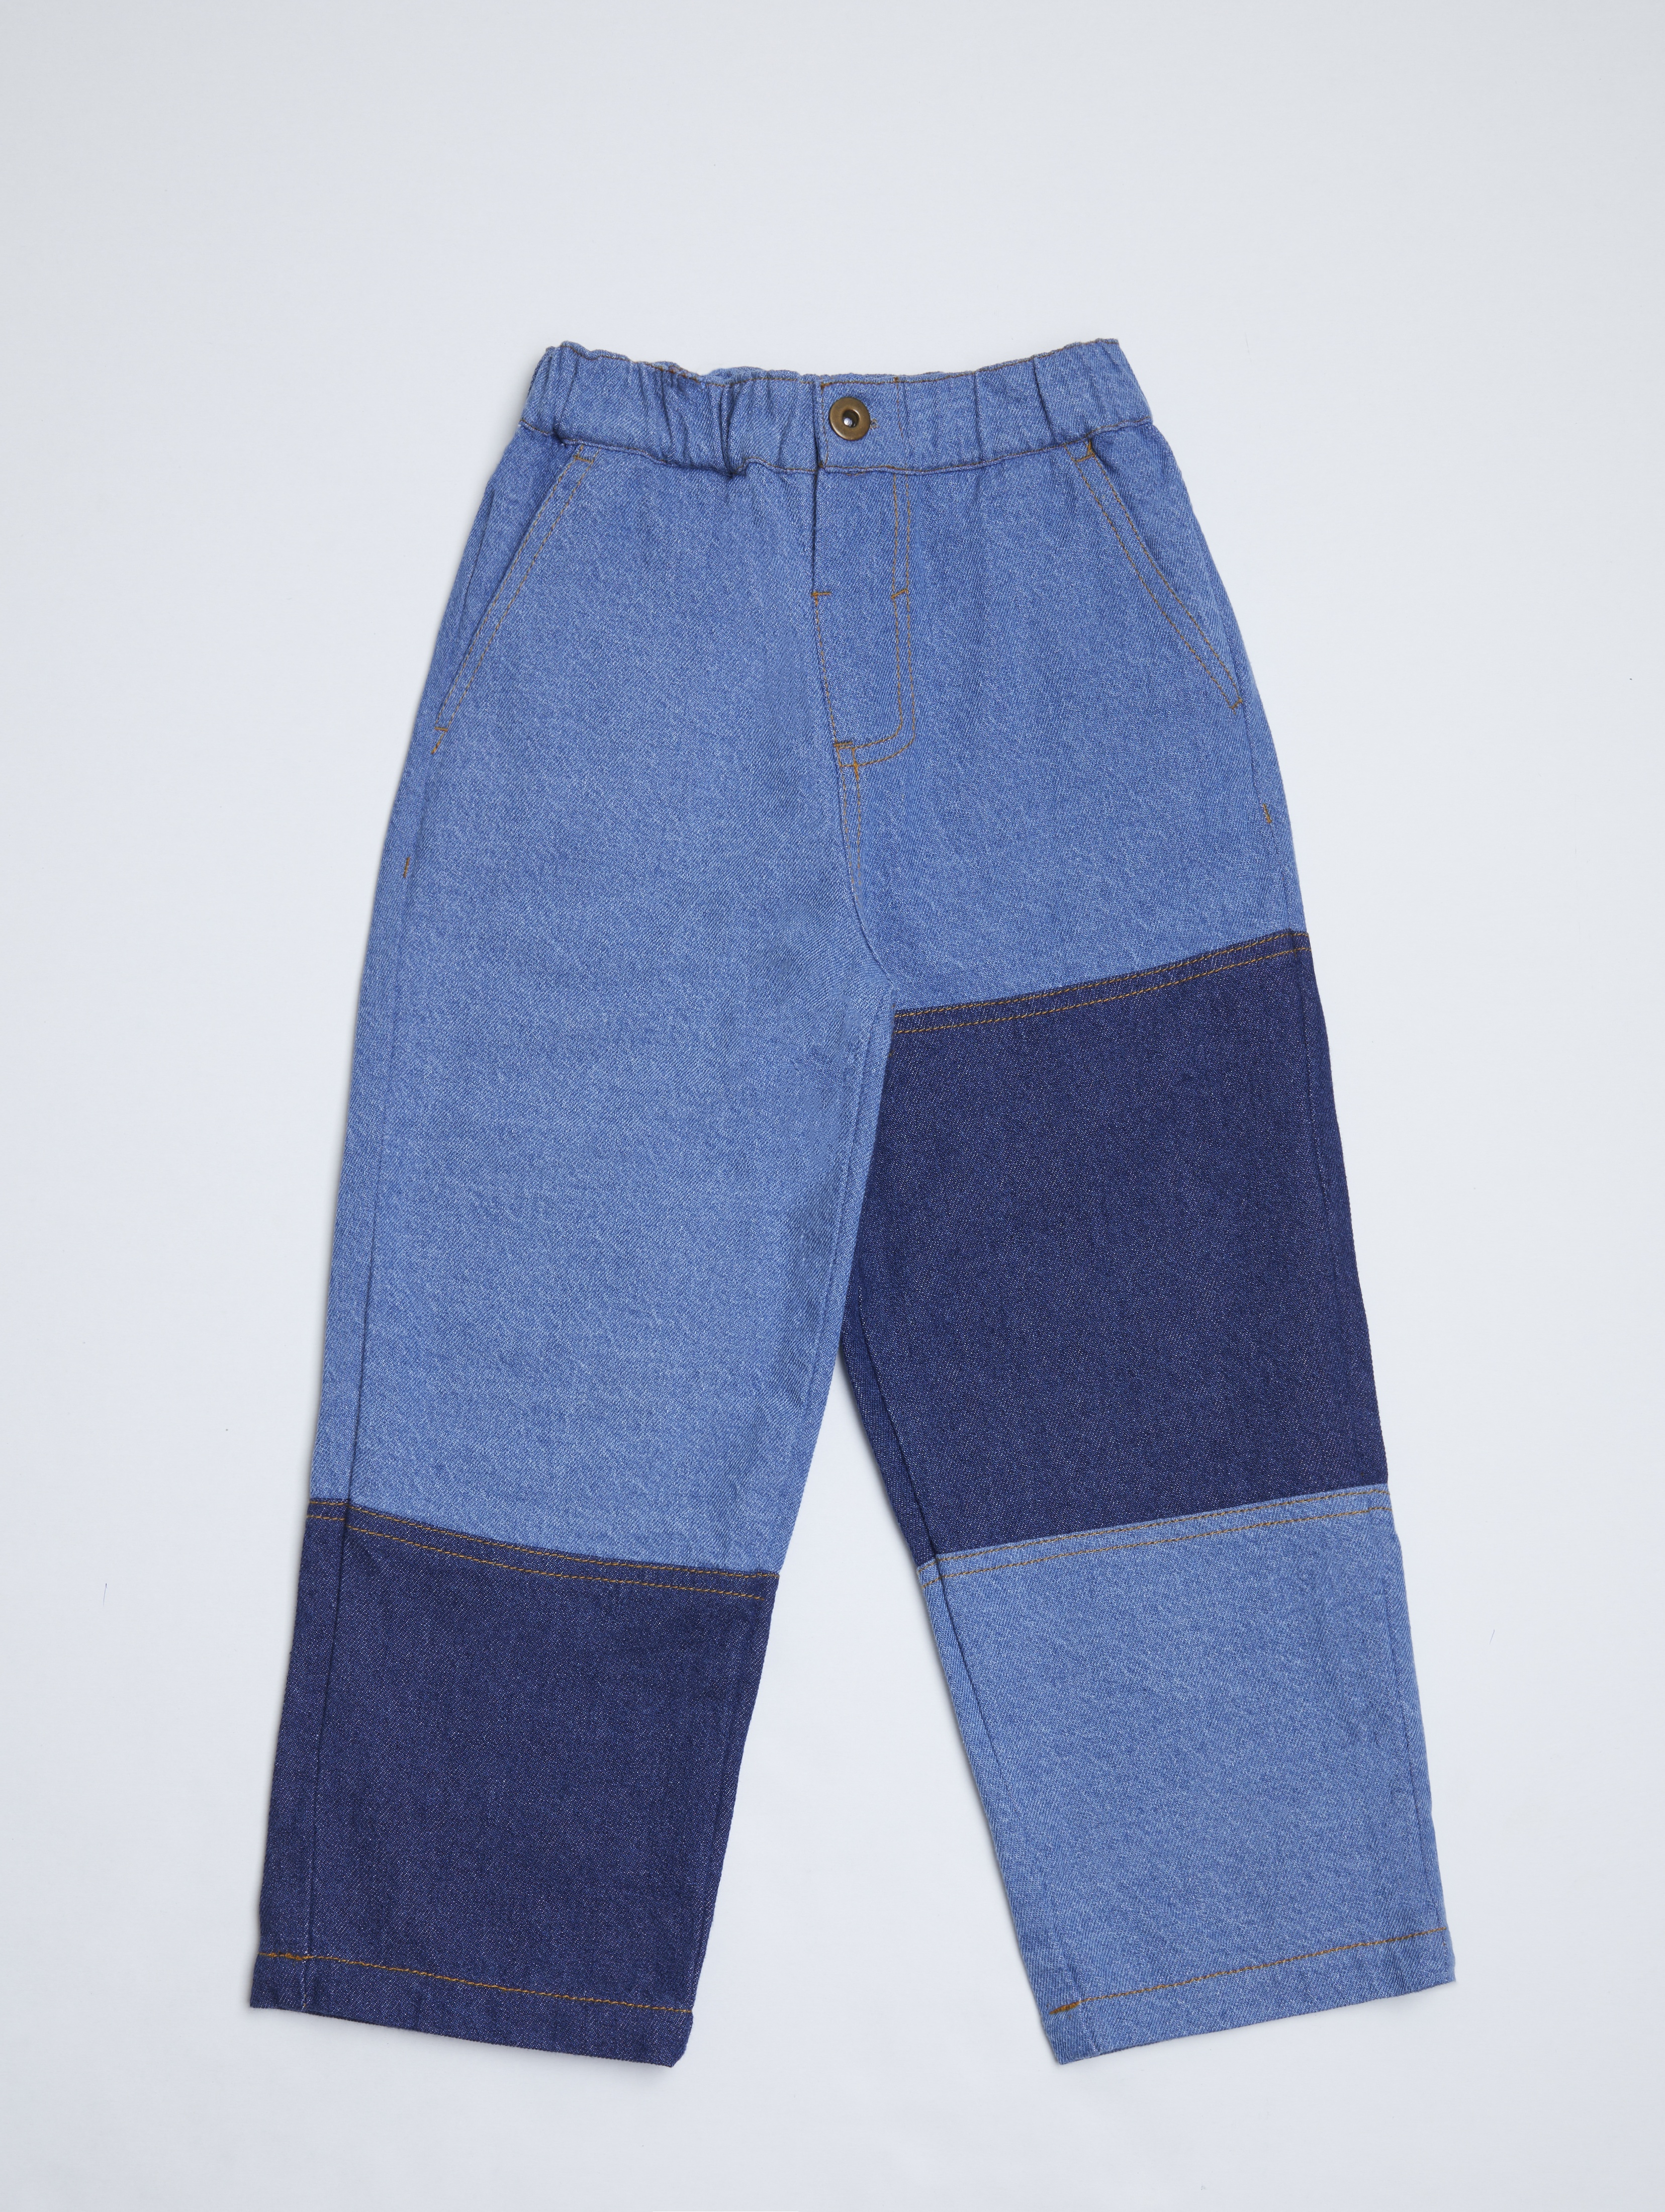 Spodnie jeansowe dla dziecka - unisex - Limited Edition